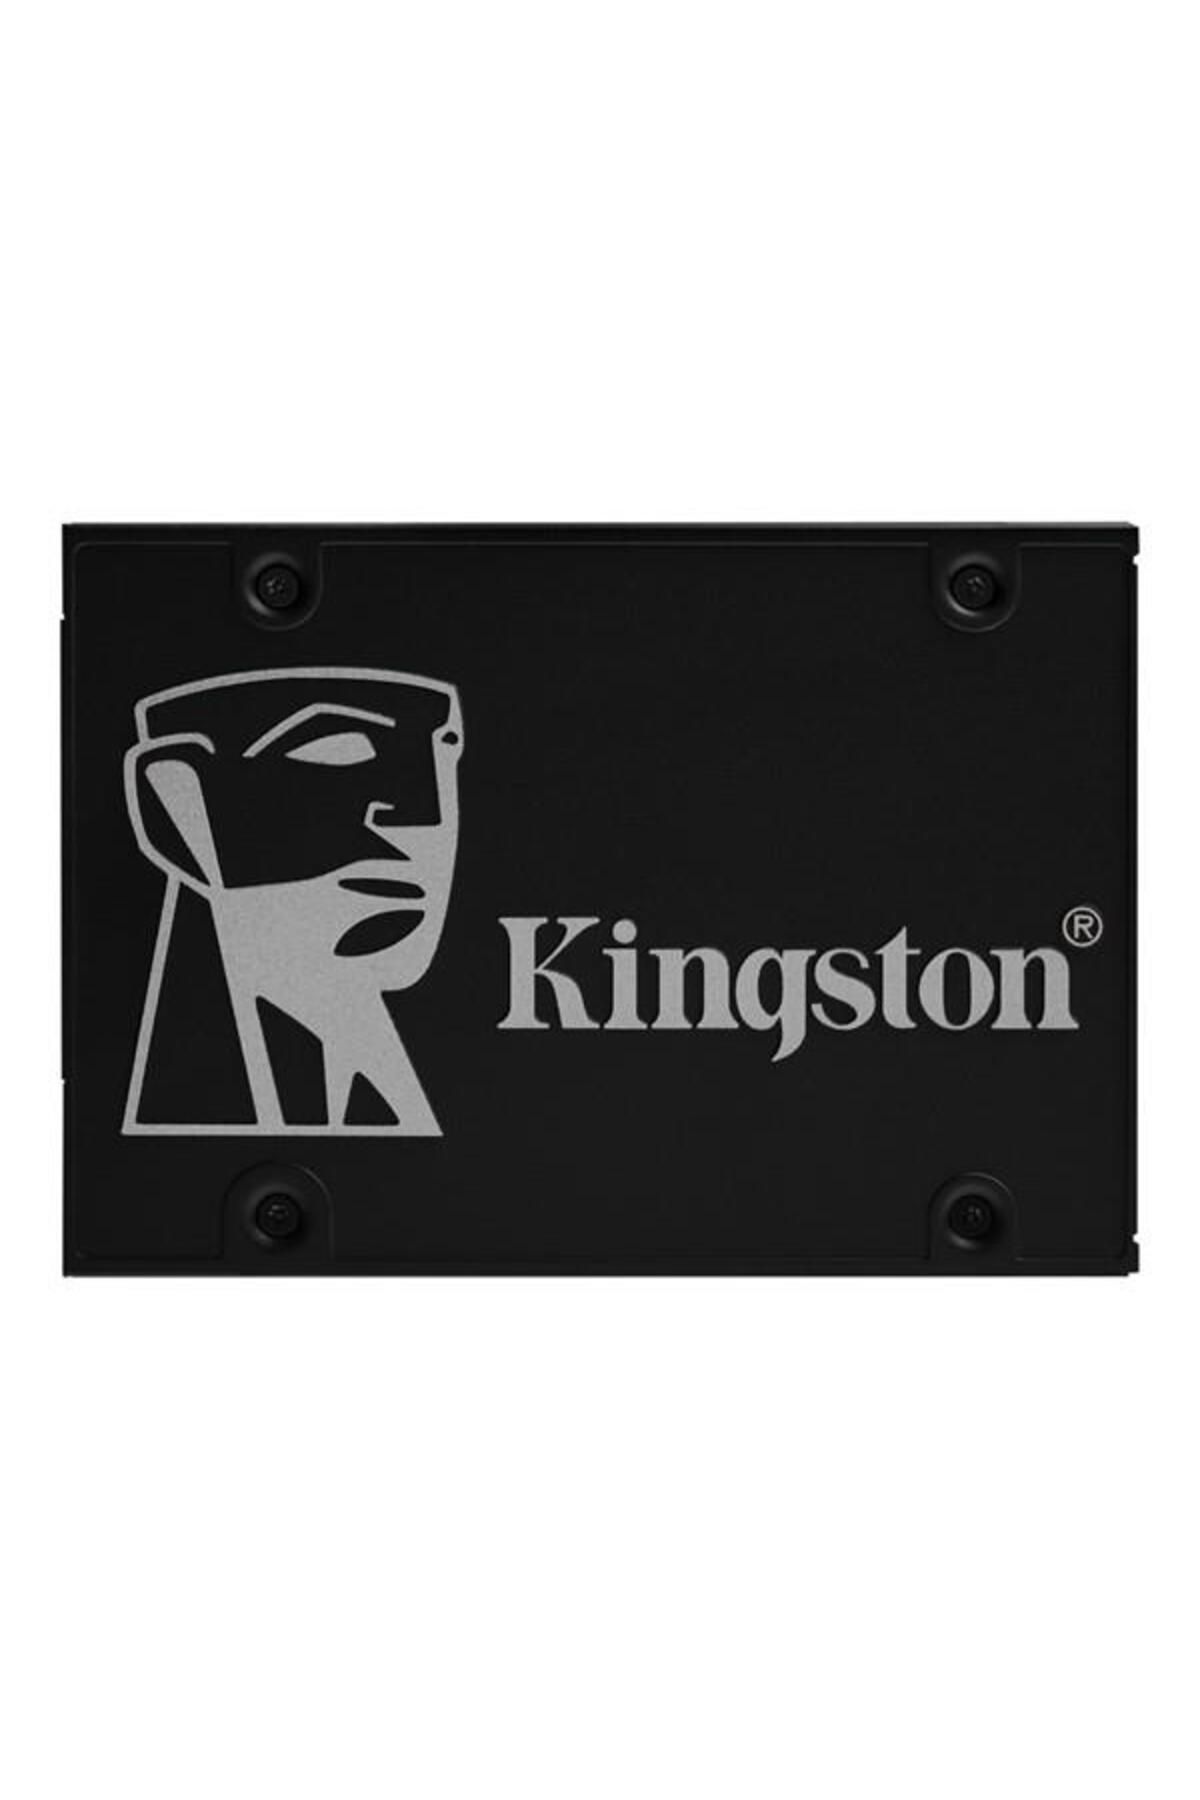 Kingston Kıngston 512gb Kc600 Skc600/512 550- 520mb/s Ssd Sata-3 Kurumsal Disk